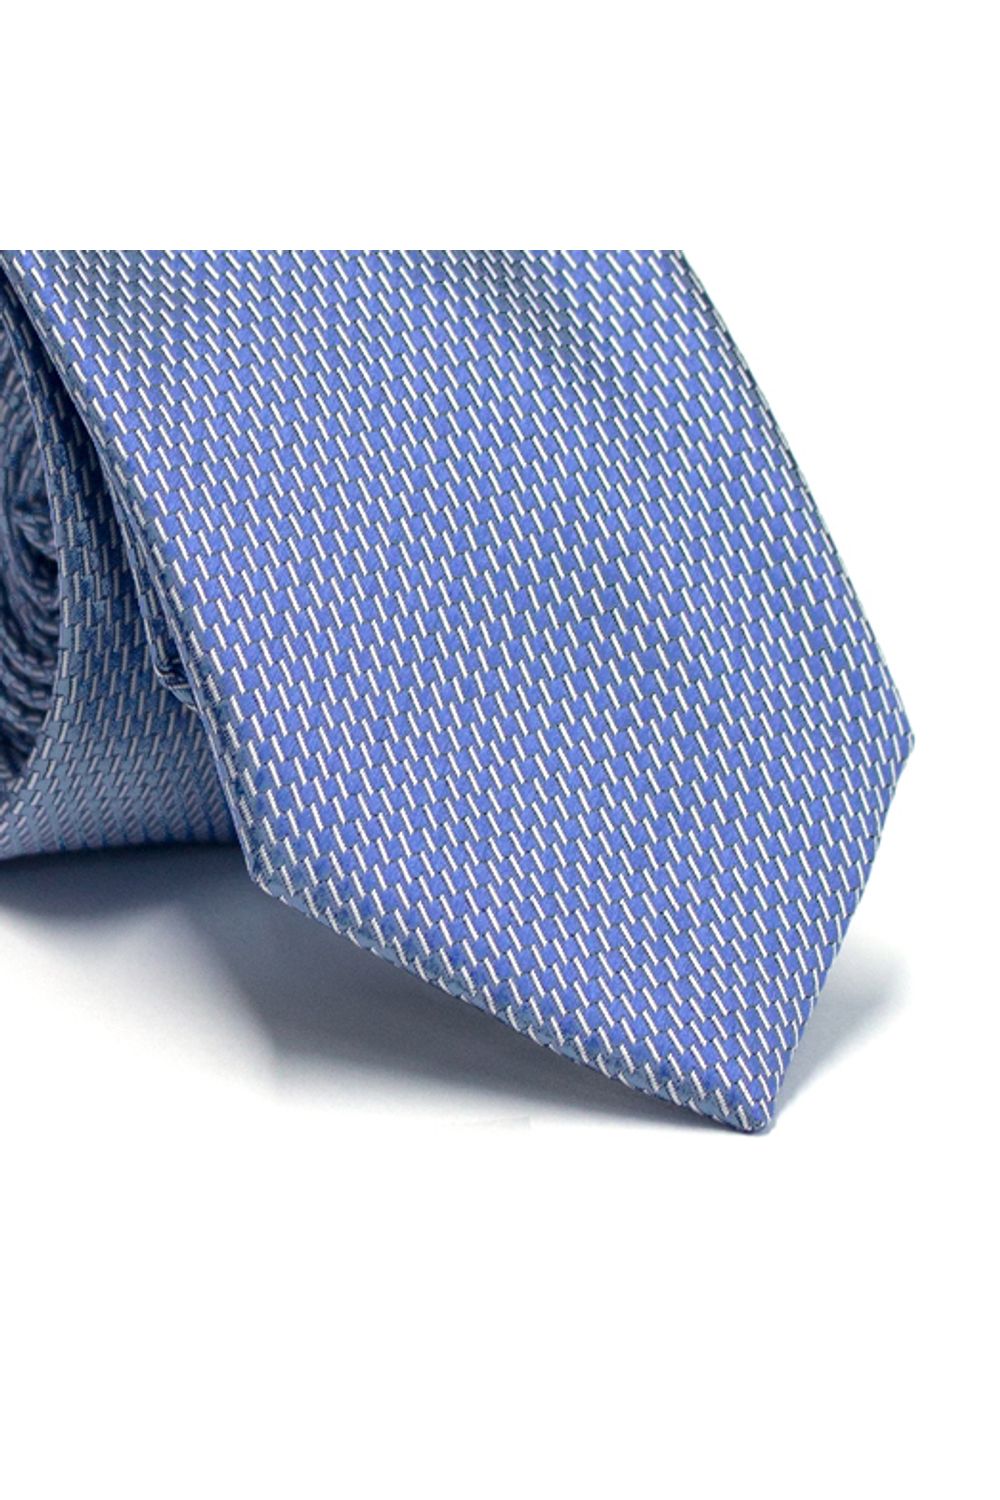 Gravata-tradicional-em-poliester-azul-acero-com-detalhes-em-branco